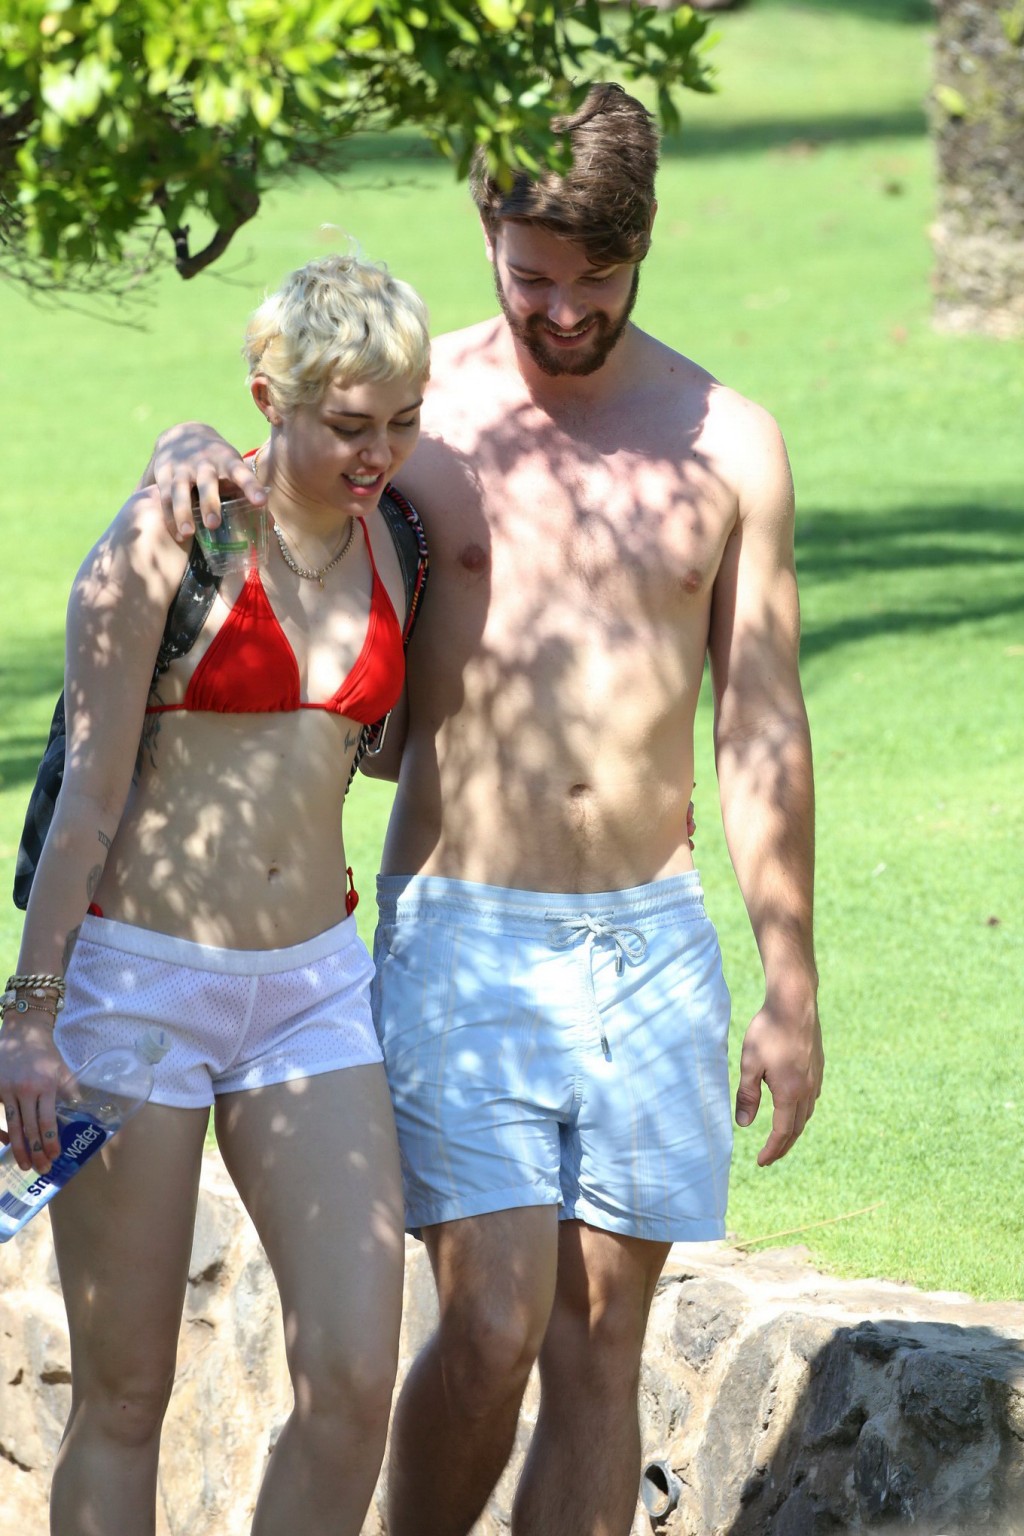 Miley cyrus con un diminuto bikini rojo y unos shorts transparentes en sus vacaciones en hawai
 #75175127